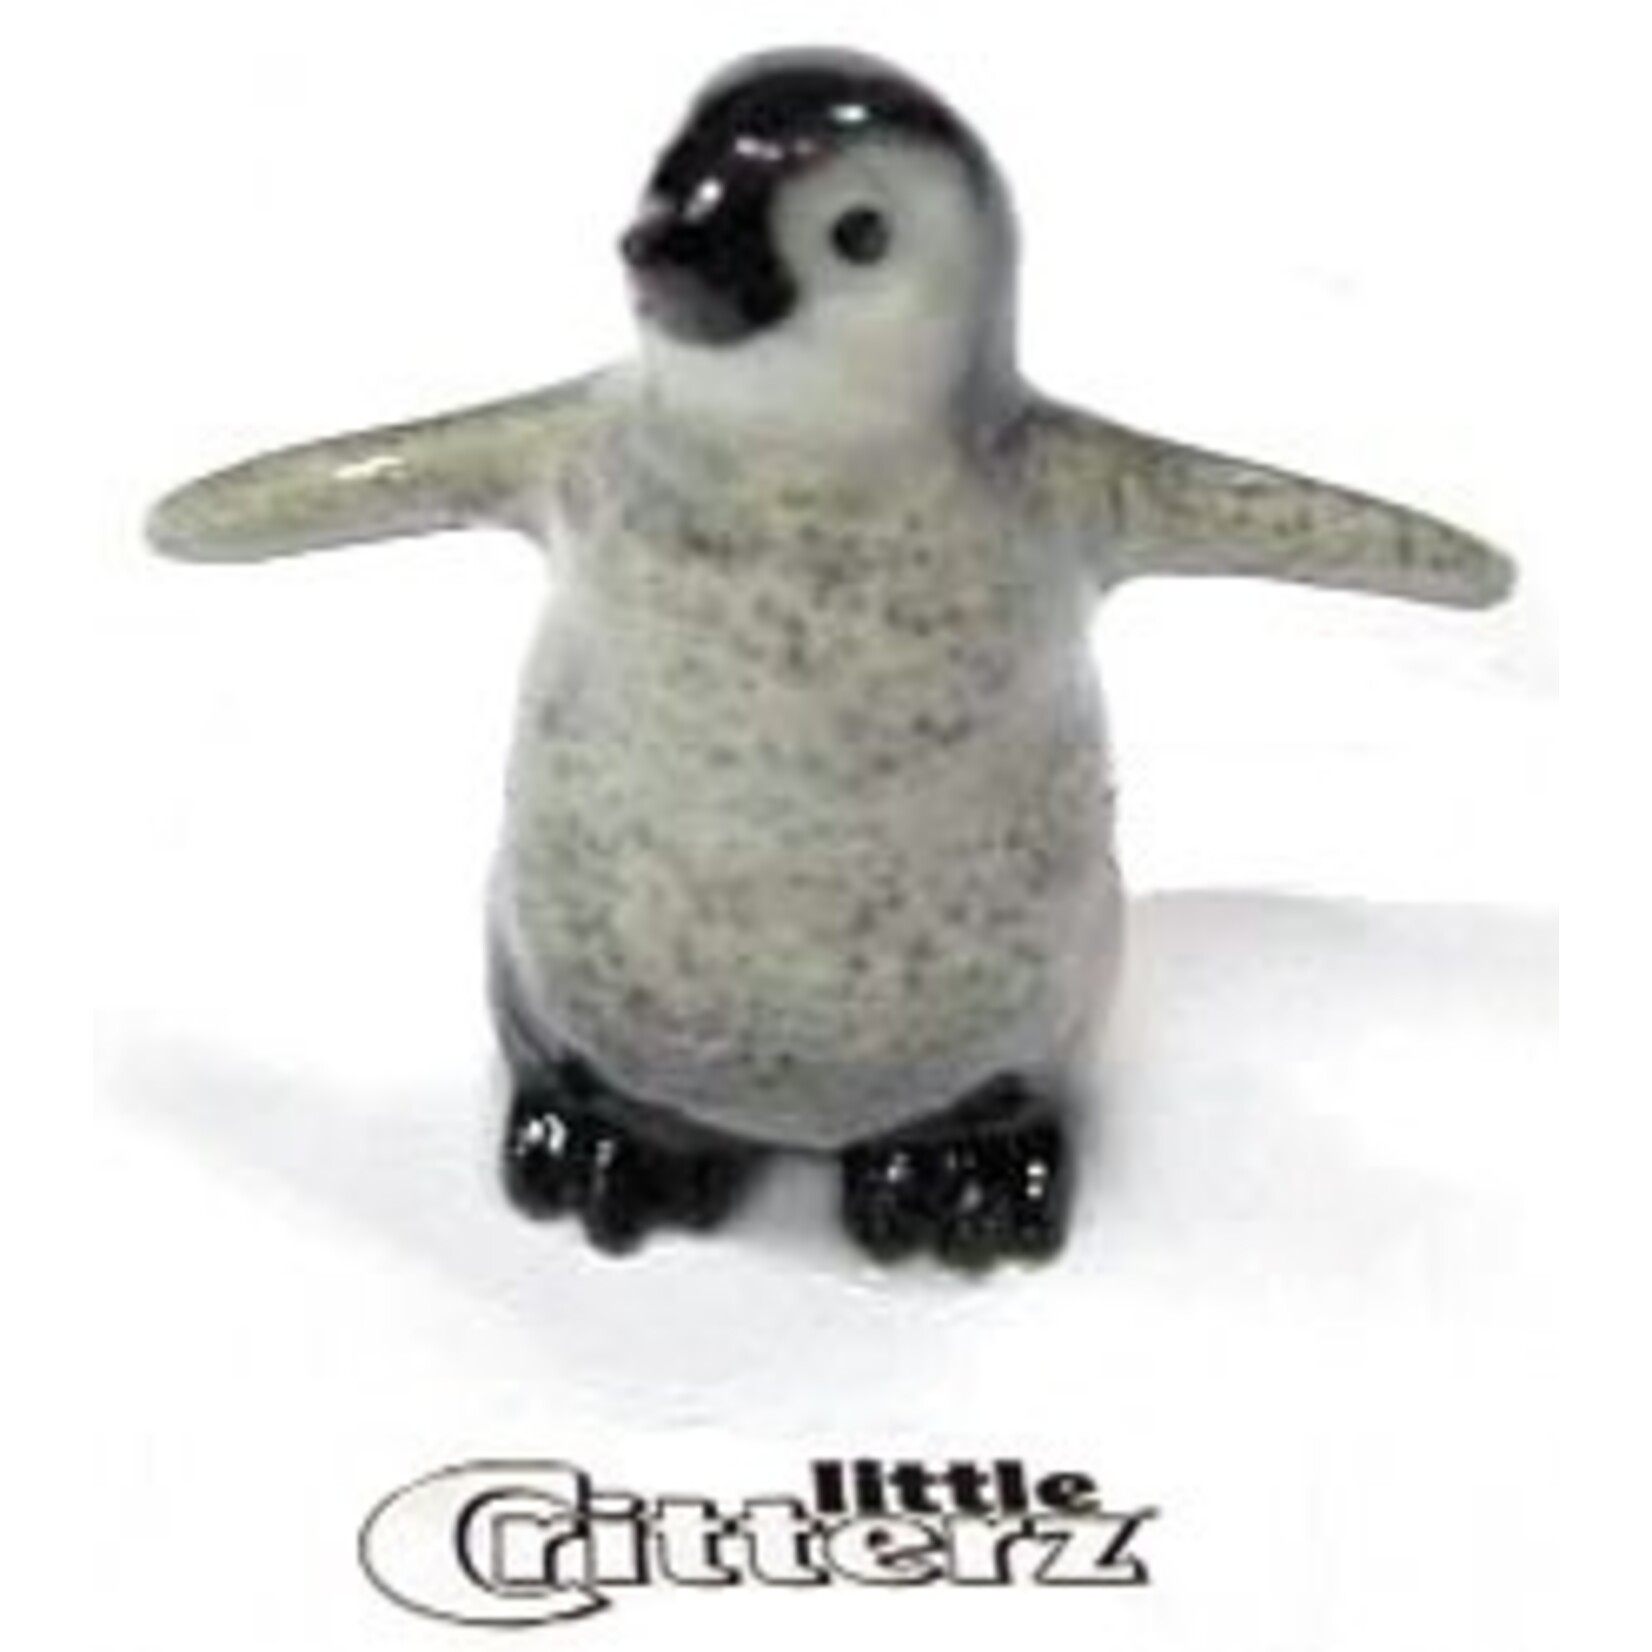 Little Critterz "Tux" Penguin Chick